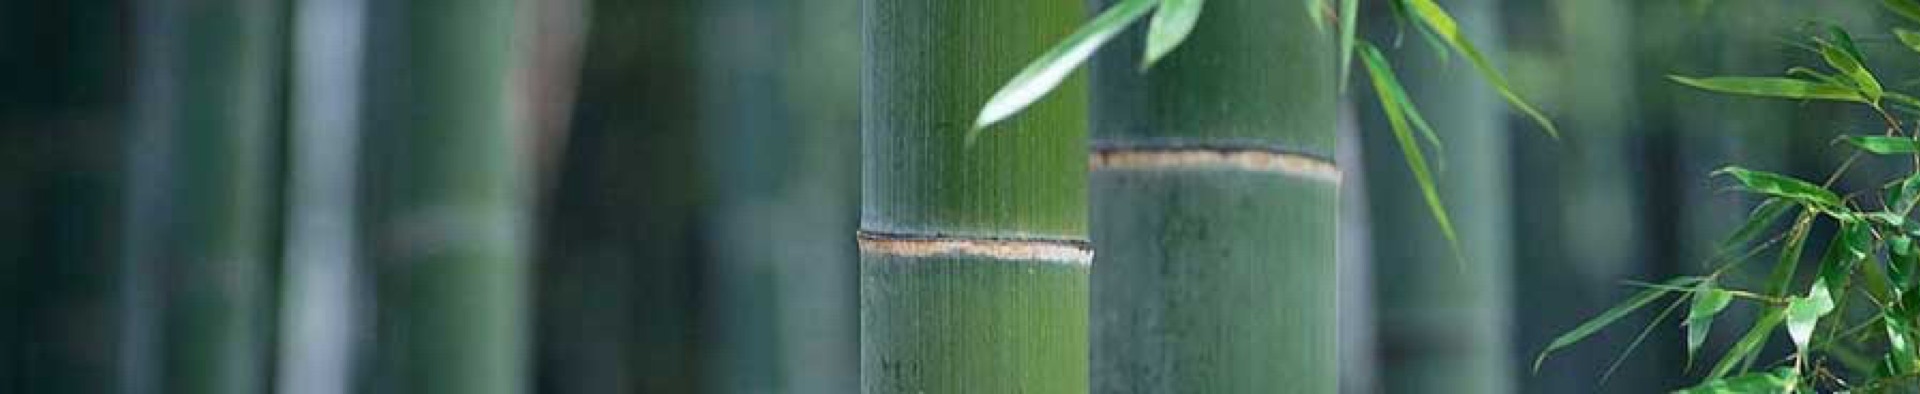 Taikiken top banner bamboo green